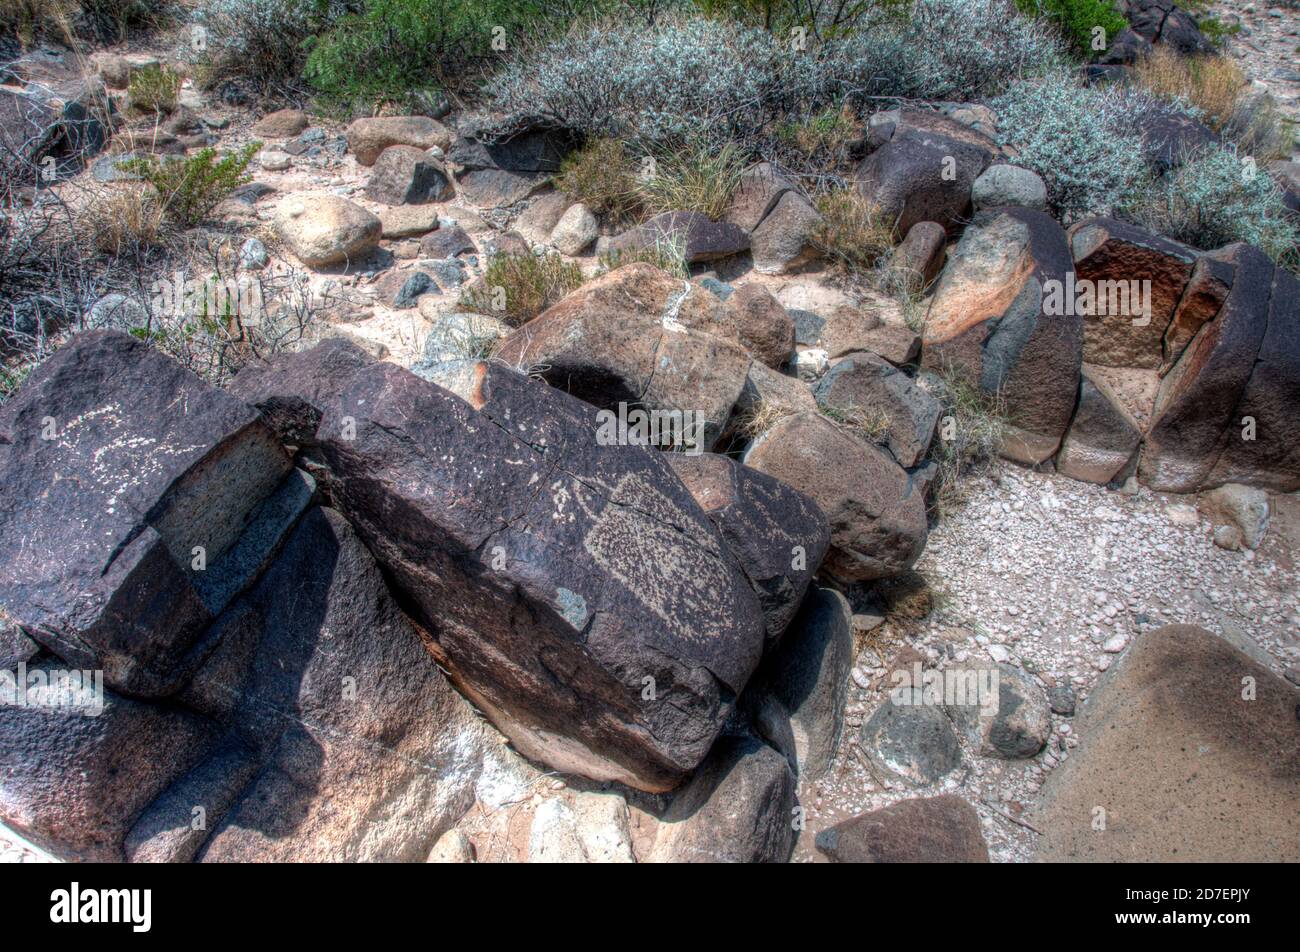 Prehistoric petroglyphs, rock art, at the Three Rivers Petroglyphs Site near Tularosa, New Mexico. Stock Photo